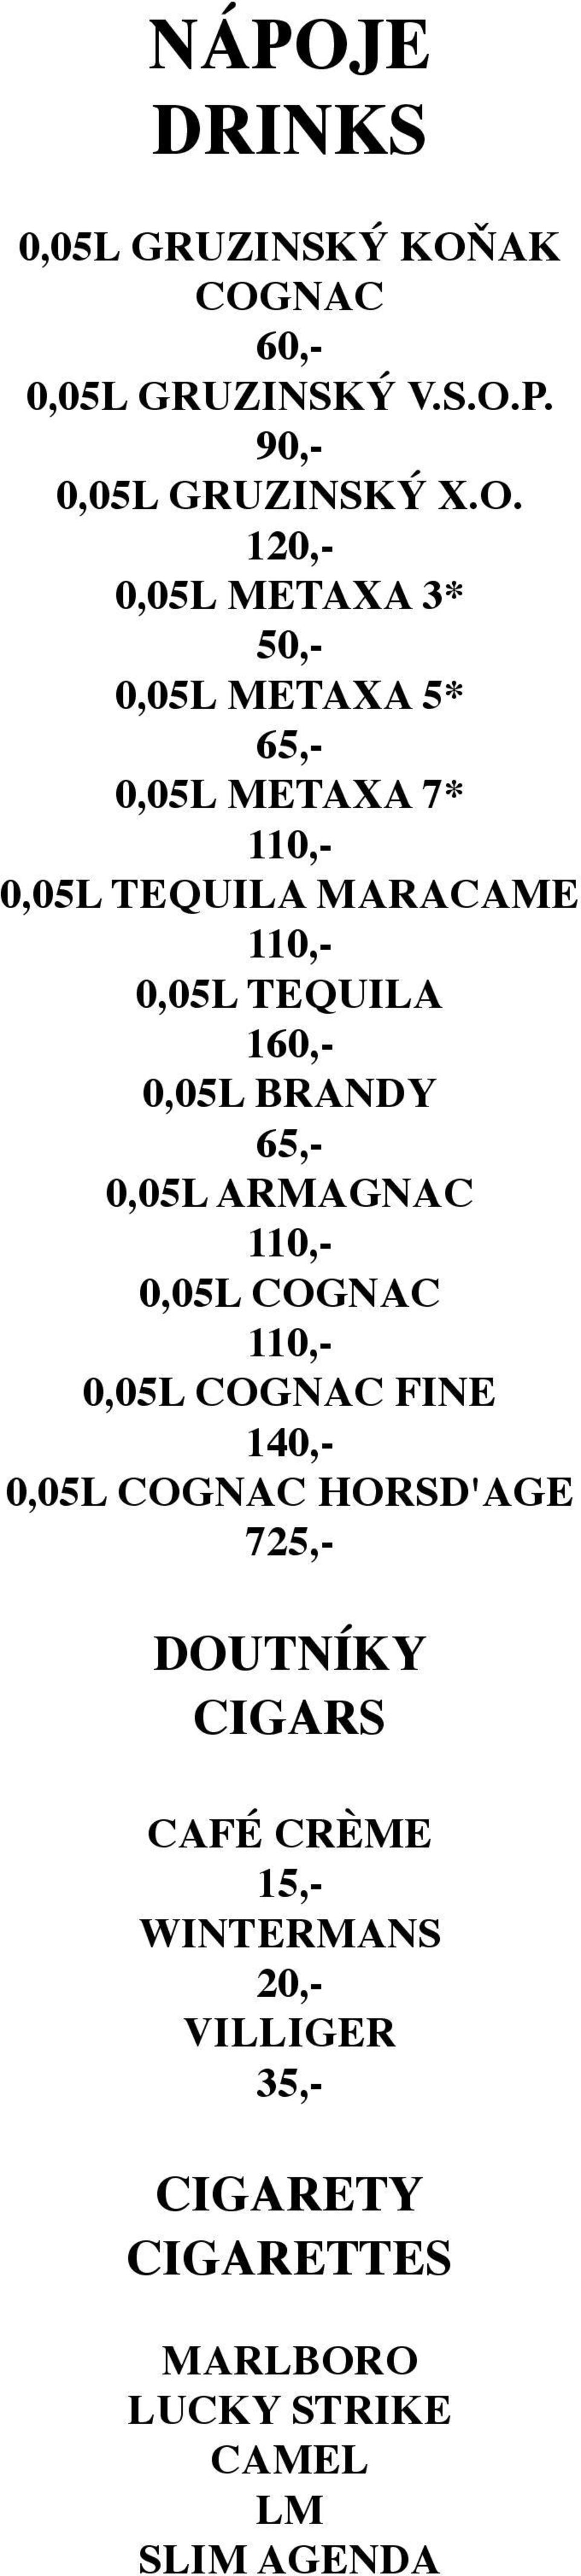 BRANDY 65,- 0,05L ARMAGNAC 0,05L COGNAC 0,05L COGNAC FINE 1 0,05L COGNAC HORSD'AGE 725,- DOUTNÍKY